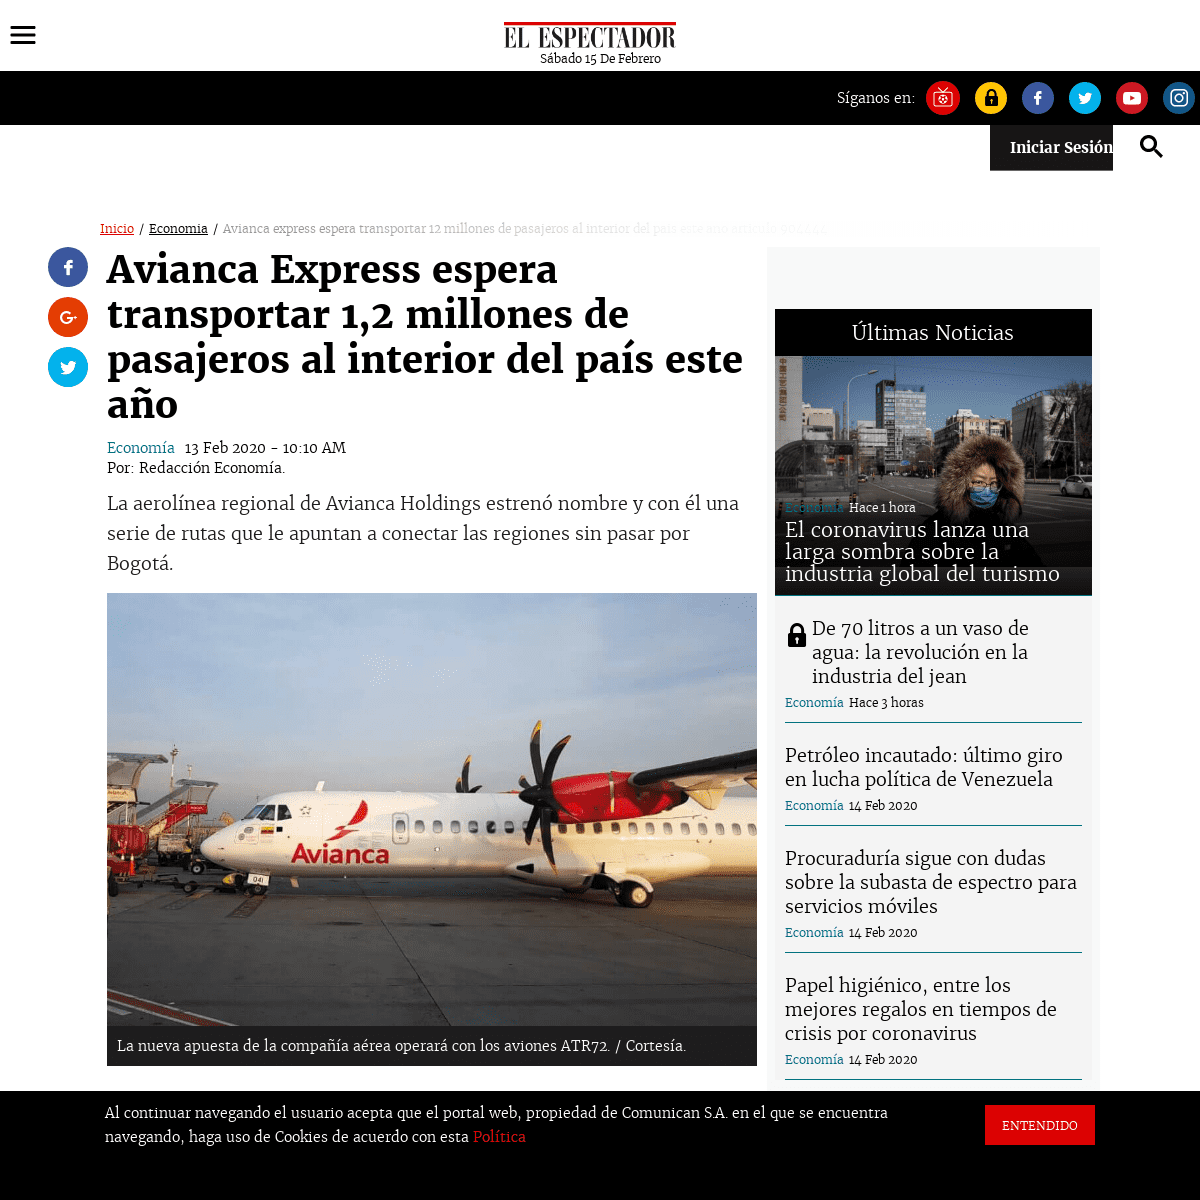 A complete backup of www.elespectador.com/economia/avianca-express-espera-transportar-12-millones-de-pasajeros-al-interior-del-p